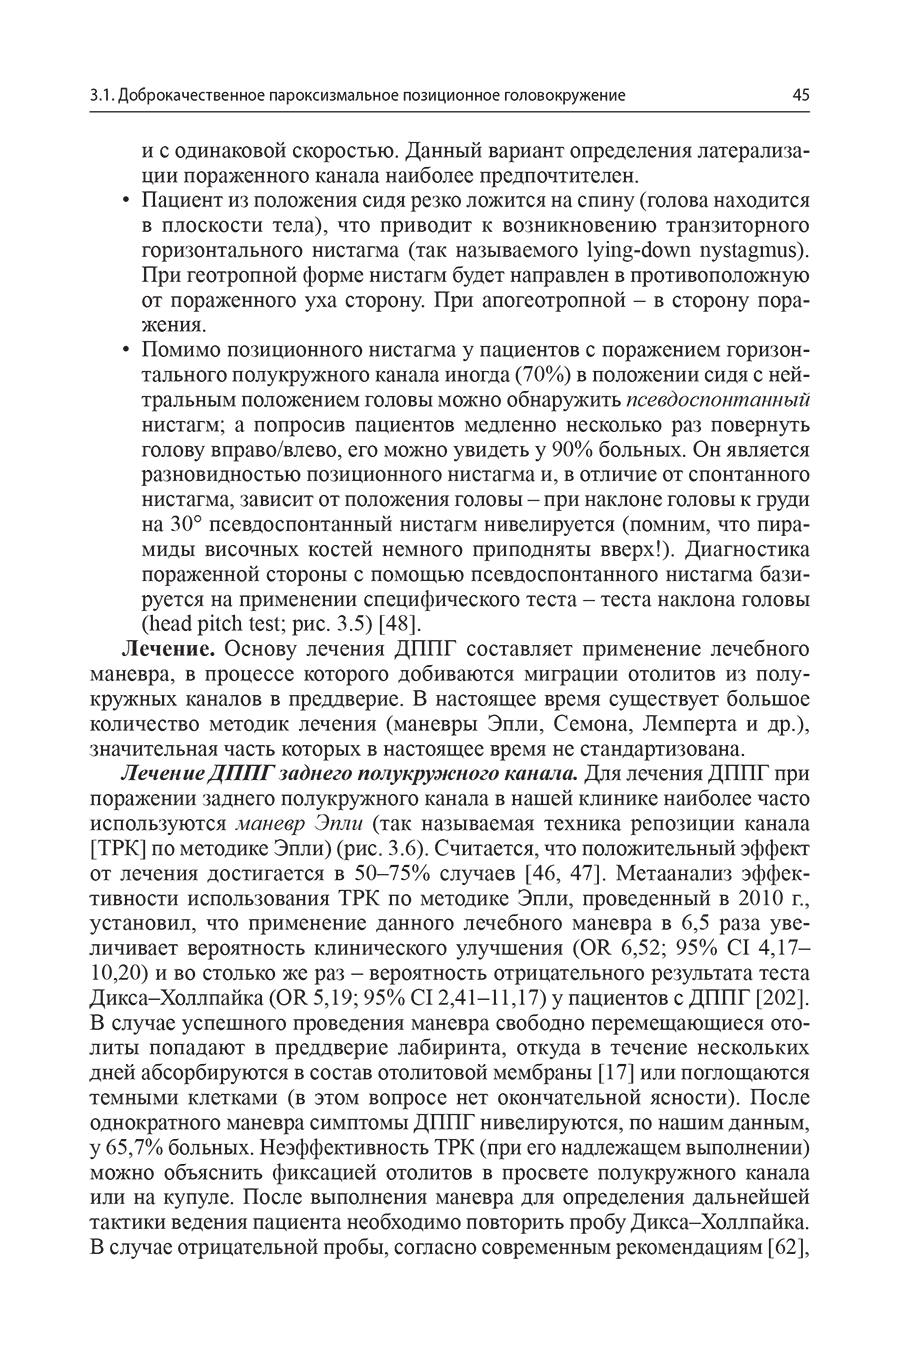 Пример страницы из книги "Головокружение. Патогенетическая реконструкция и практические рекомендации" - Живолупов С. А.